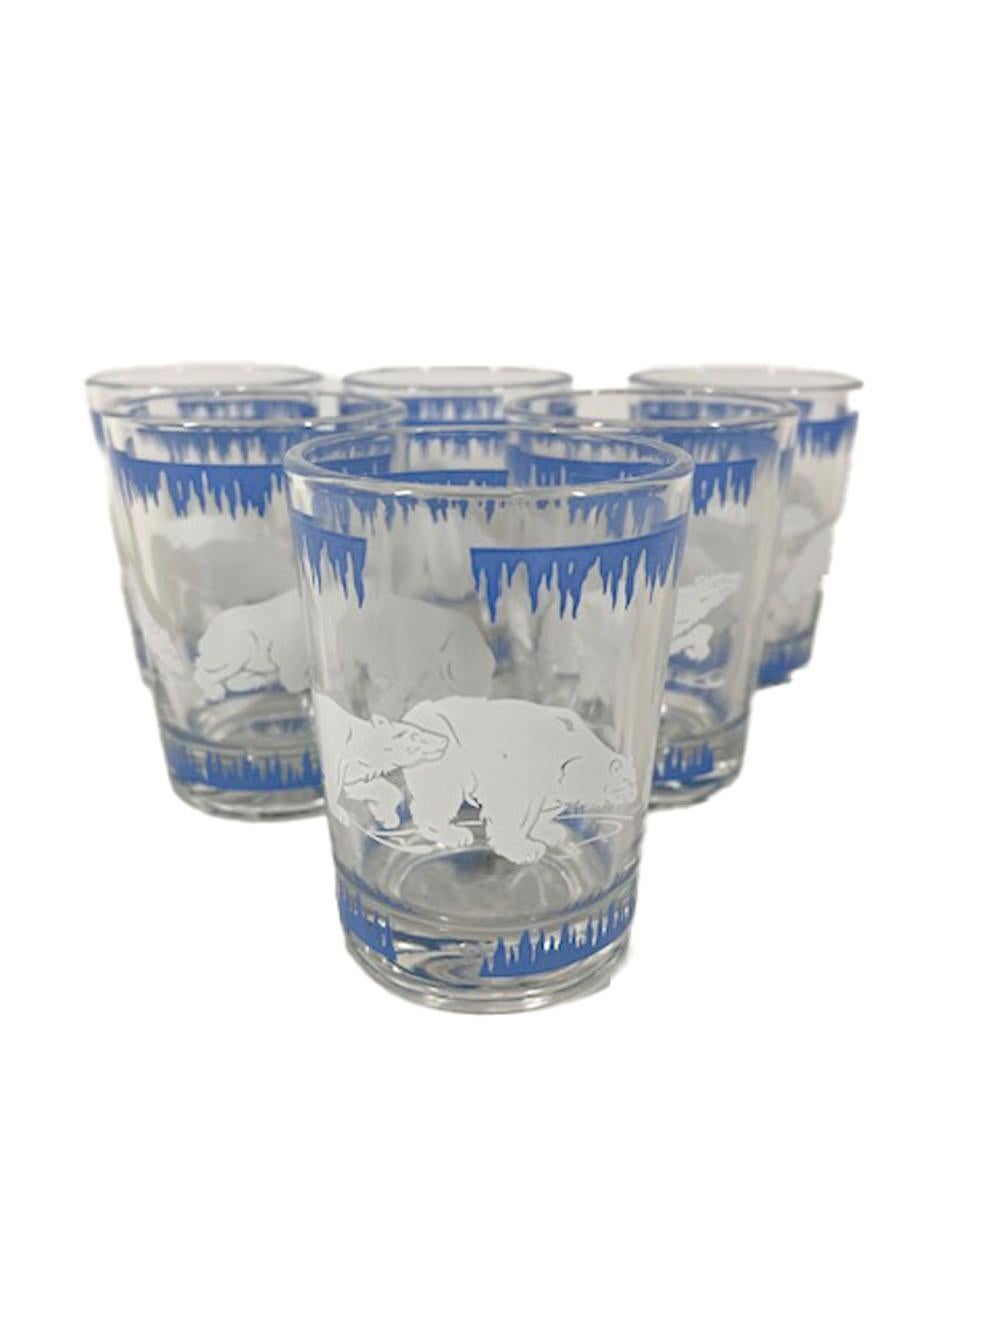 Achtteiliges Art-Déco-Cocktailset, bestehend aus einem verchromten Cocktailshaker mit Deckel, einer Eisschale und sechs Cocktailgläsern. Verziert mit einem Band aus blauem Eis über und unter weißen Eisbären.